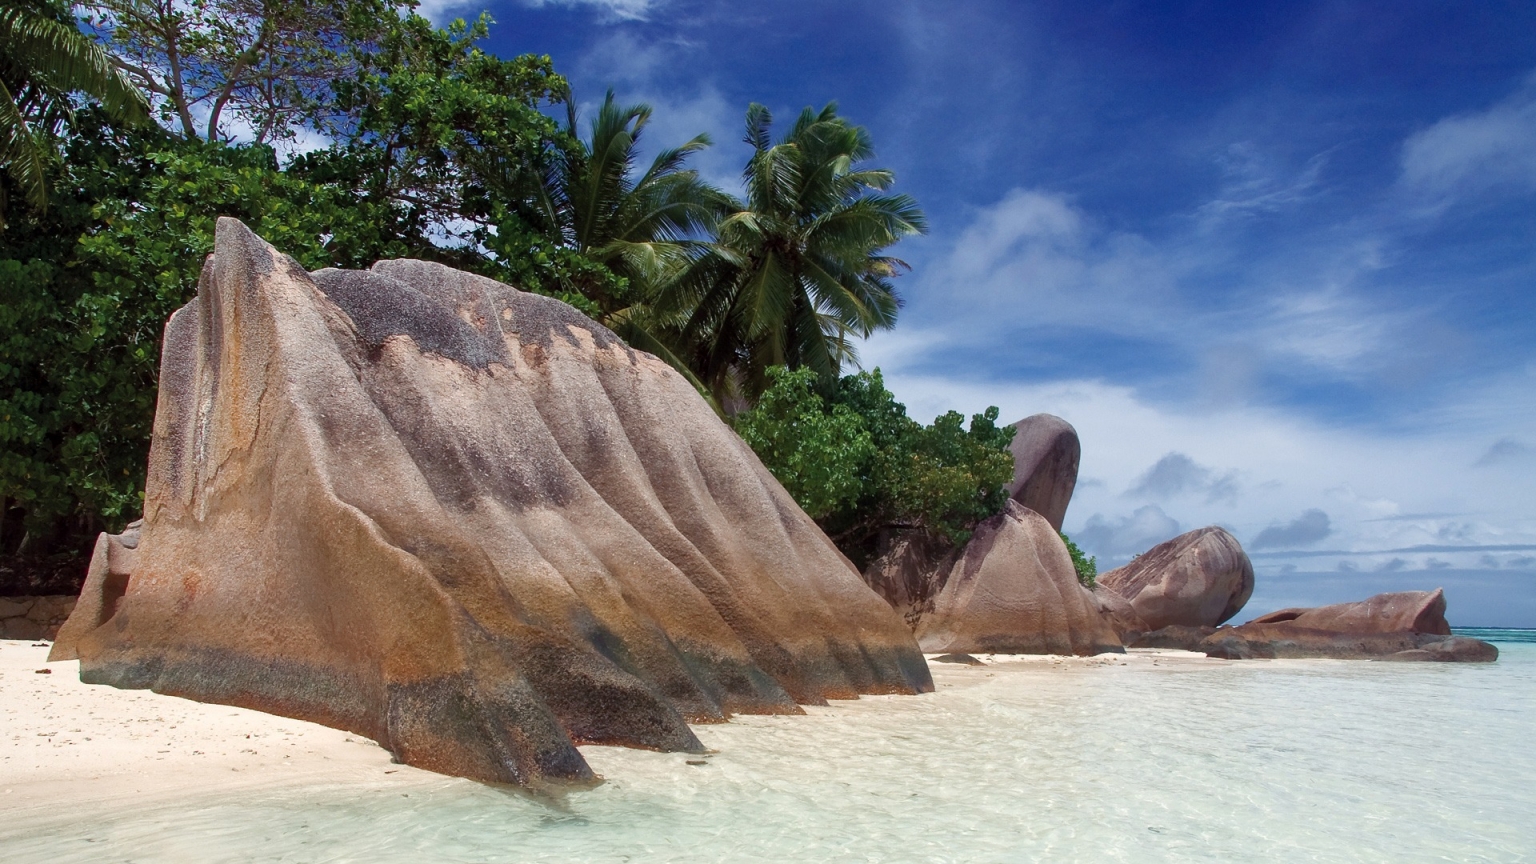 Seychelles for 1536 x 864 HDTV resolution